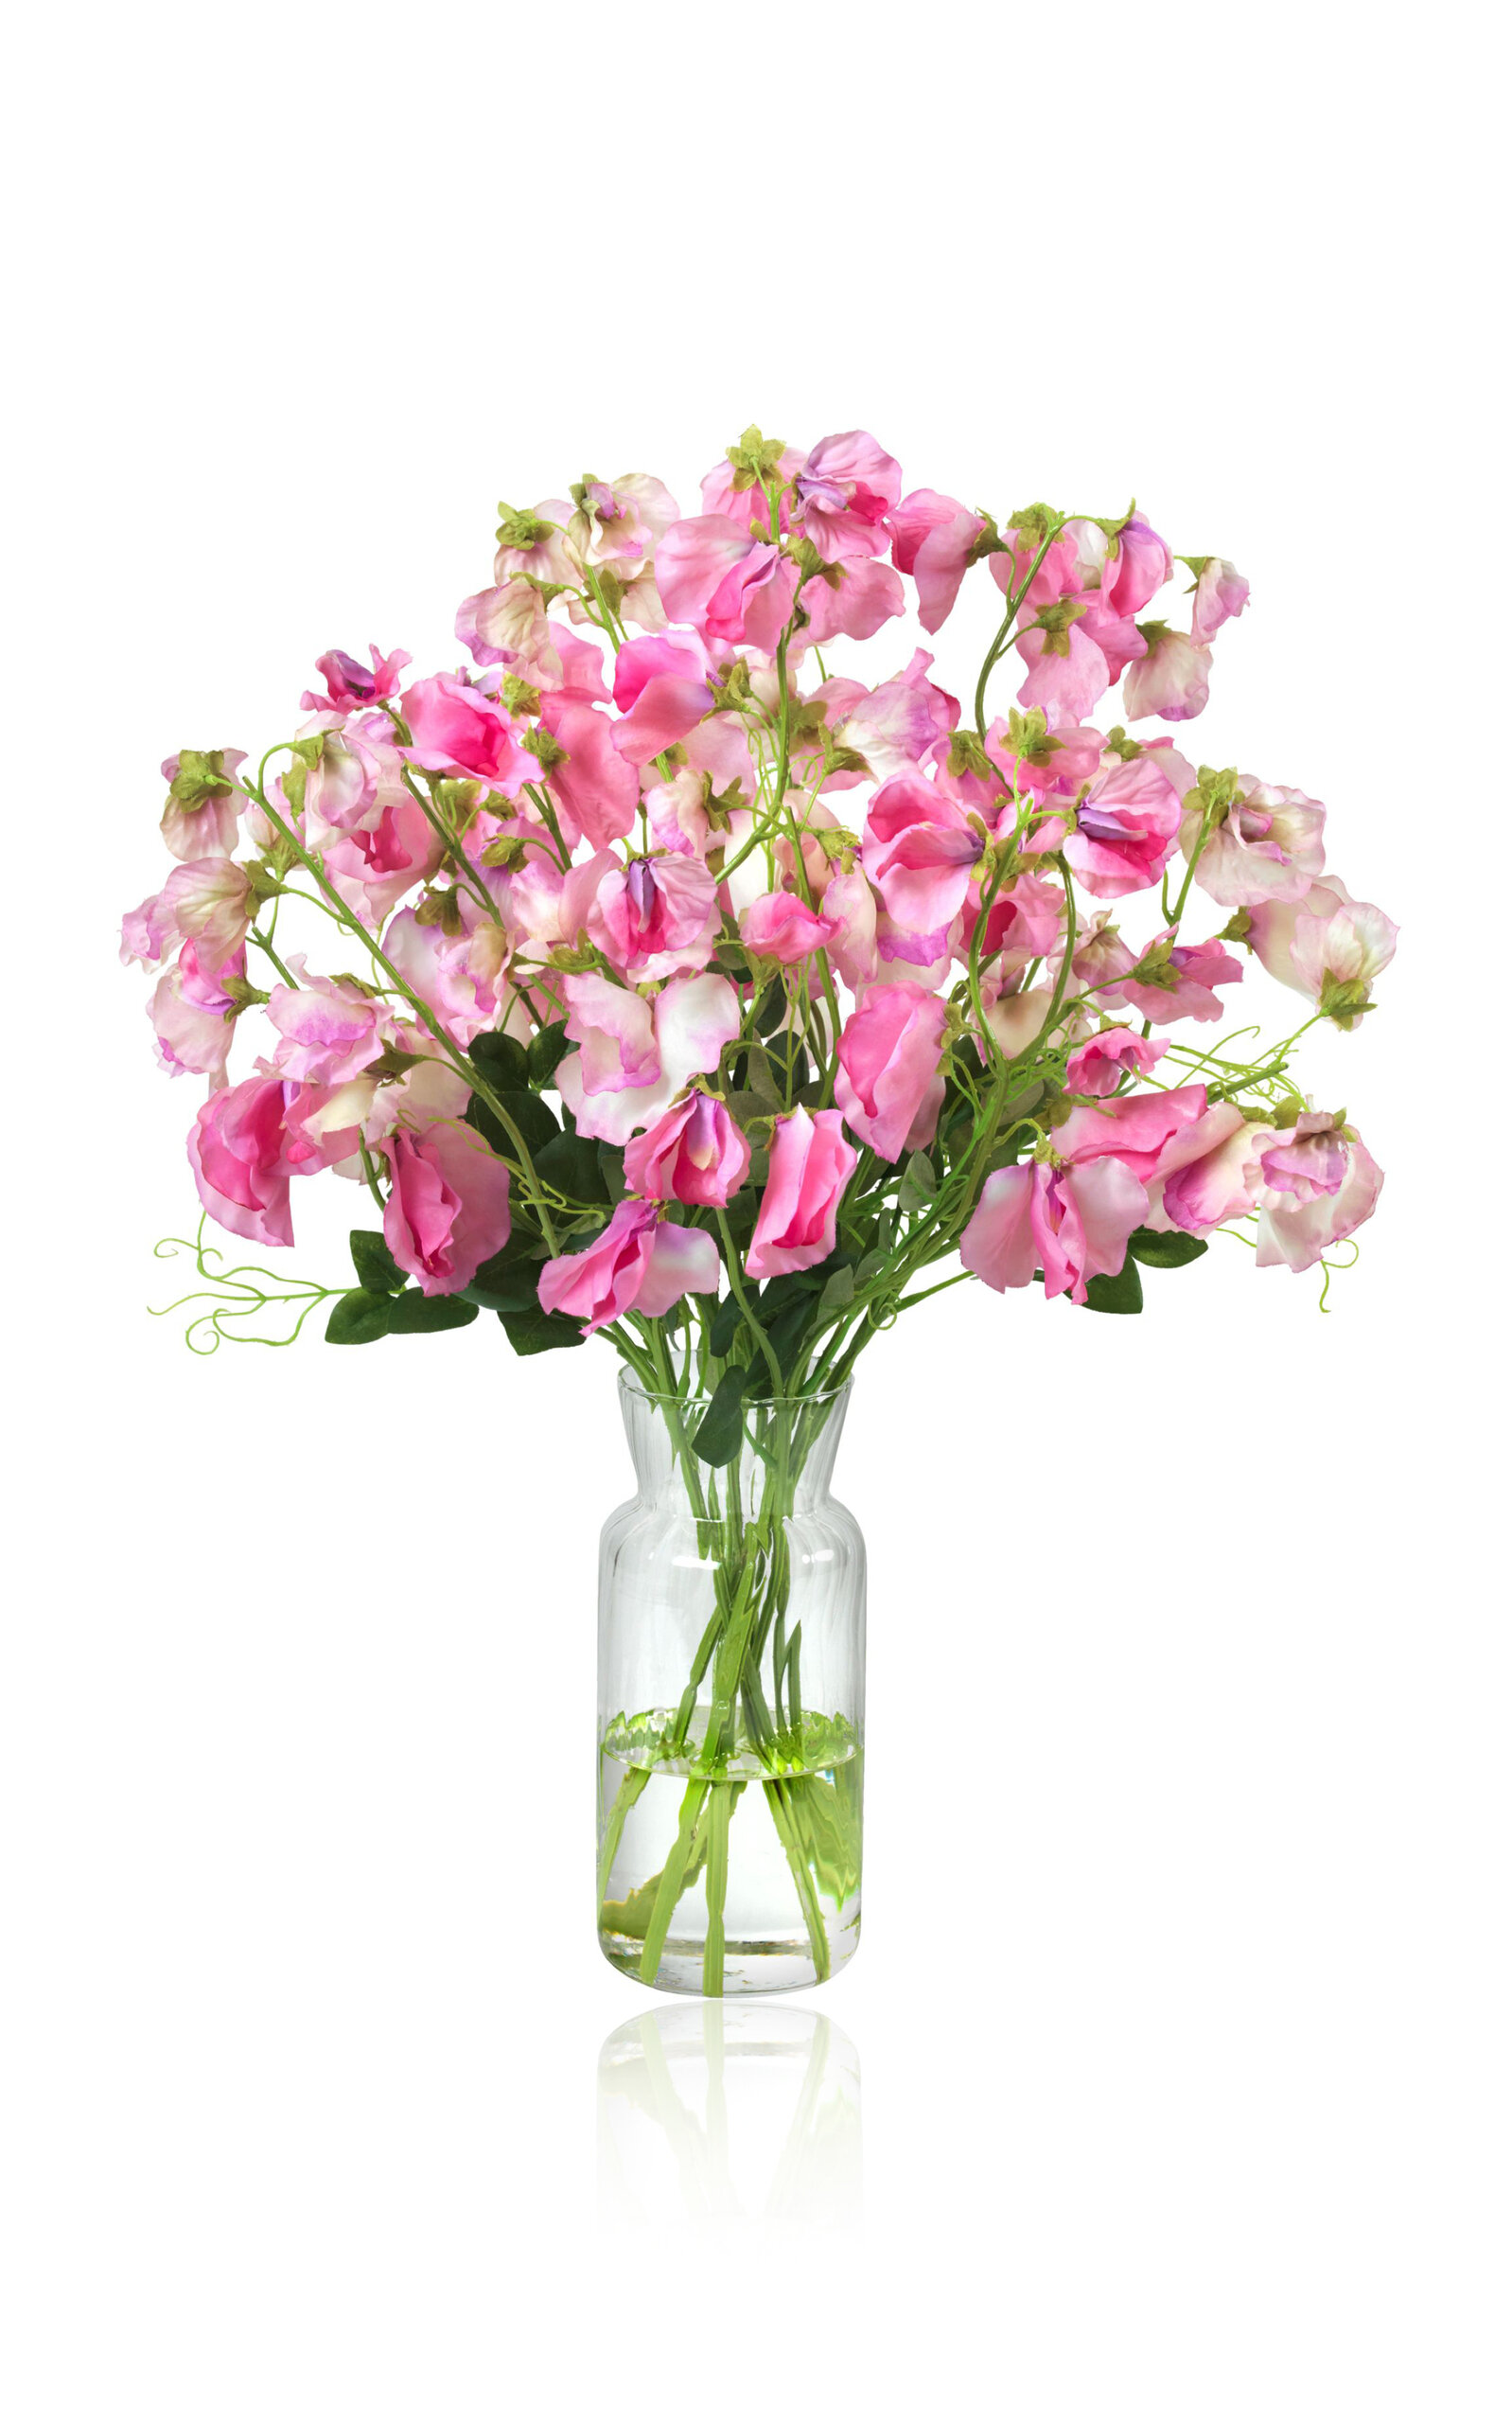 Diane James Designs Sweet Peas In Ribbed Vase In Pink